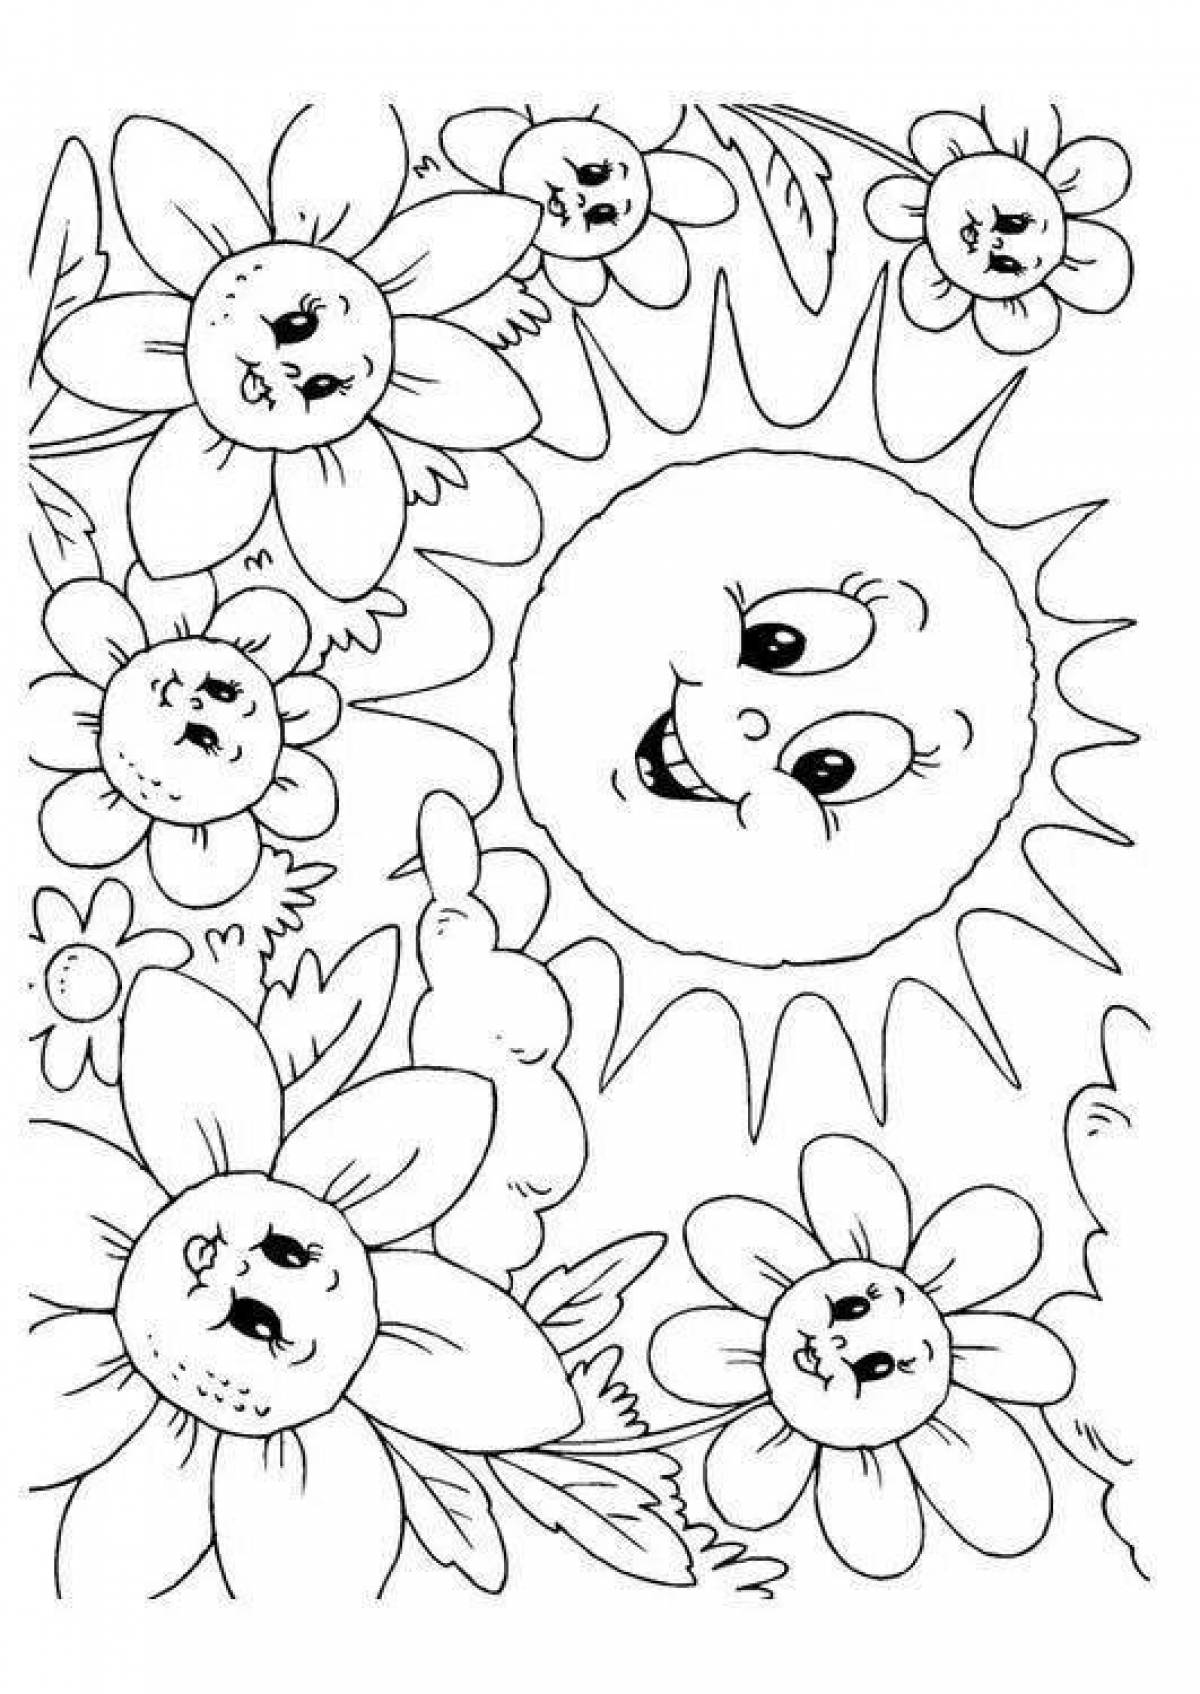 Color-lush coloring page для старшей группы детского сада